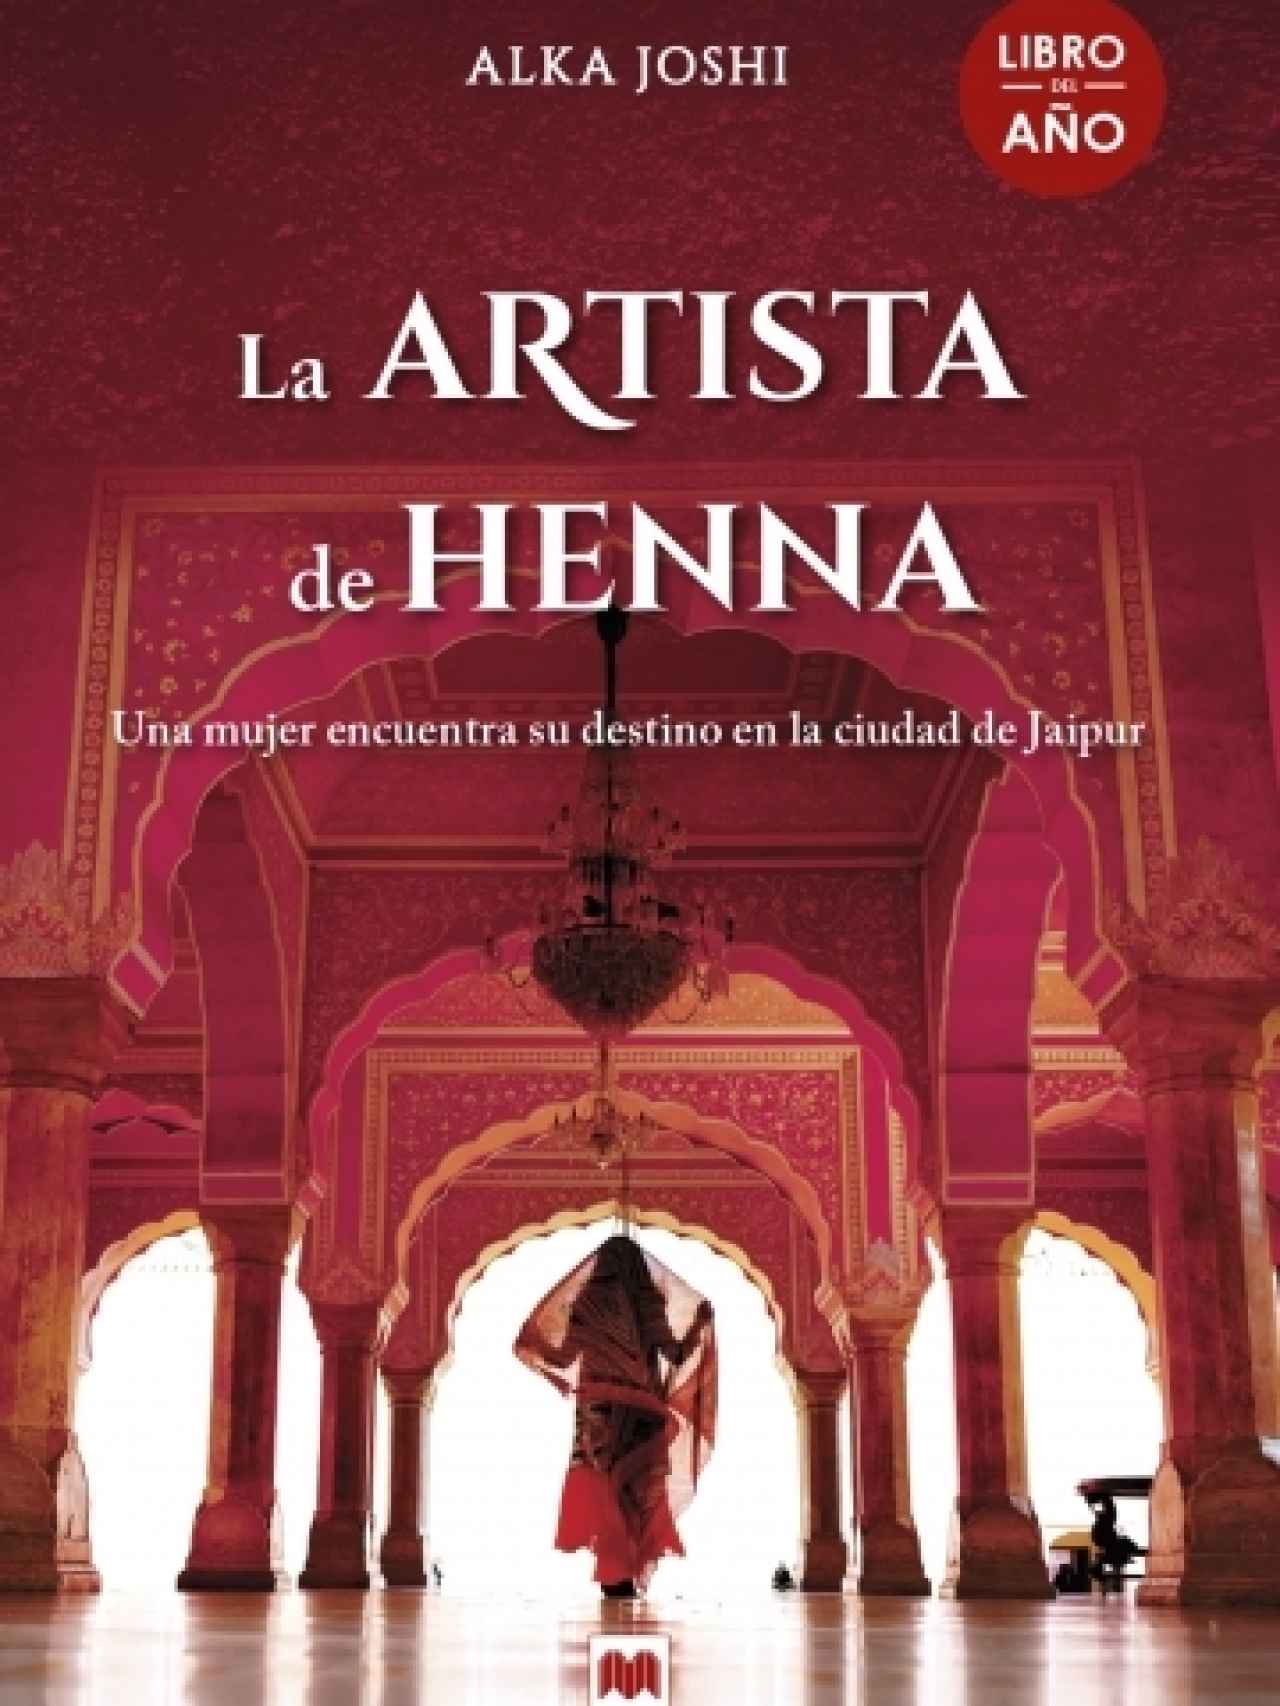 Portada del libro 'La artista de henna'.